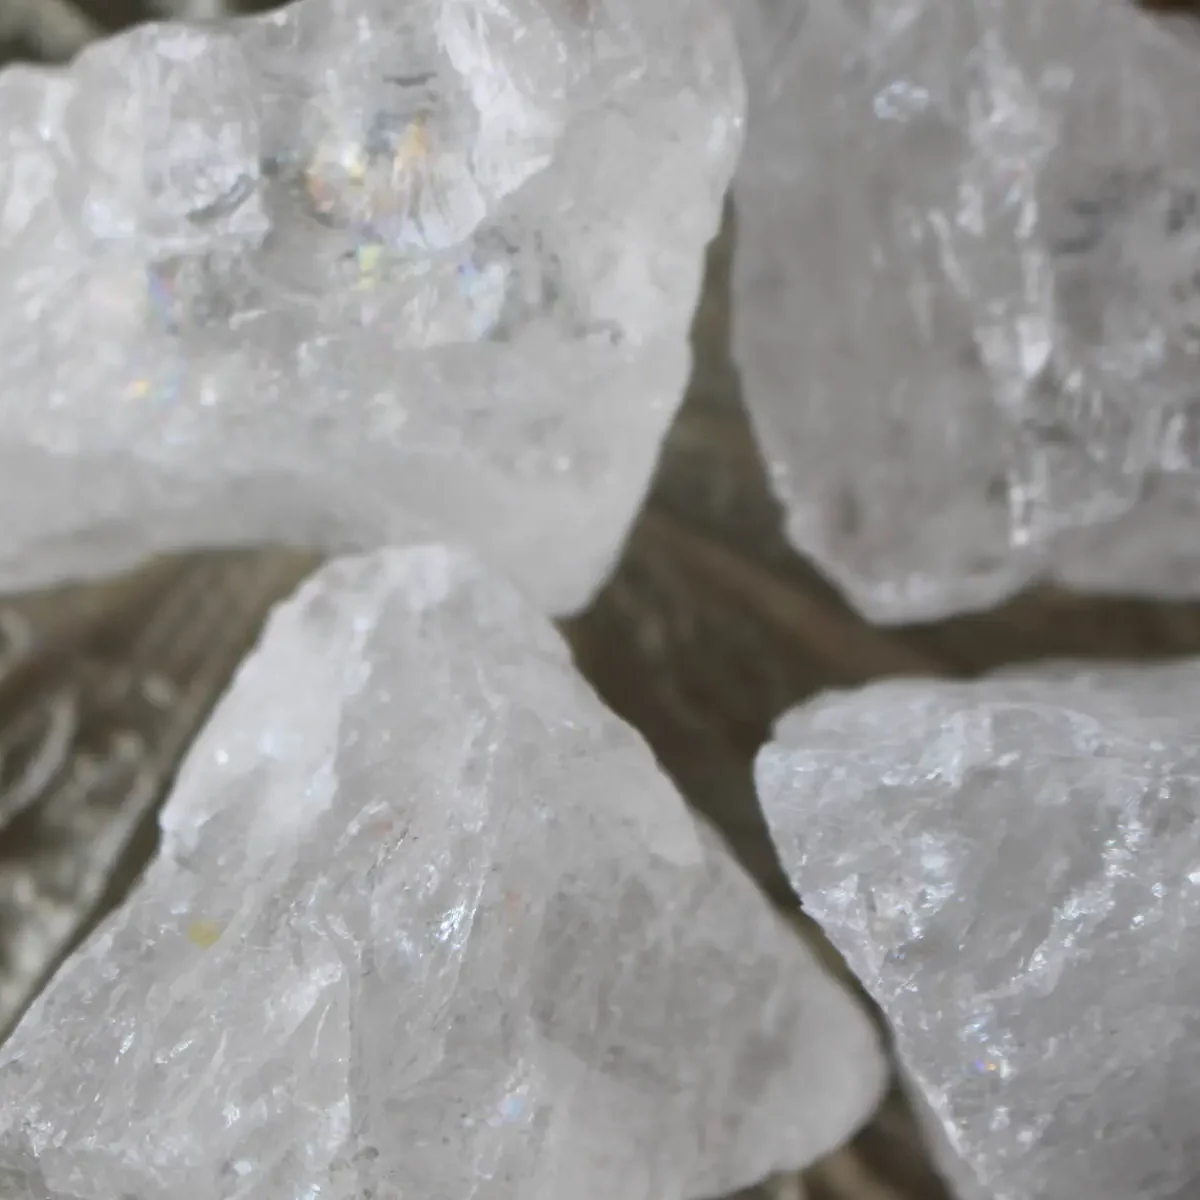 White and Transparent Gemstones